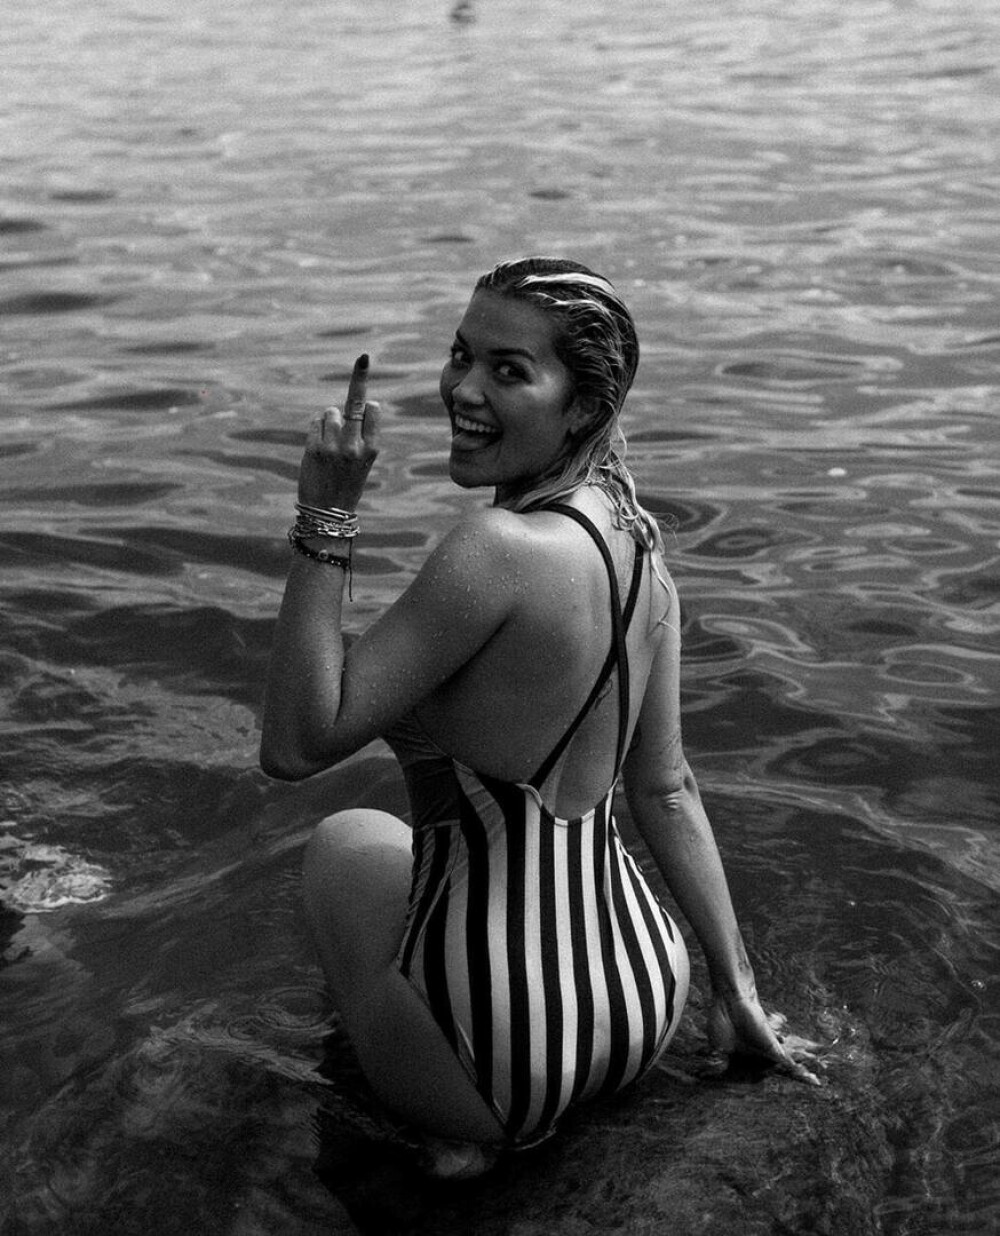 Rita Ora și colecția ei spectaculoasă de costume de baie. Cum a fost surprinsă cântăreața | GALERIE FOTO - Imaginea 4